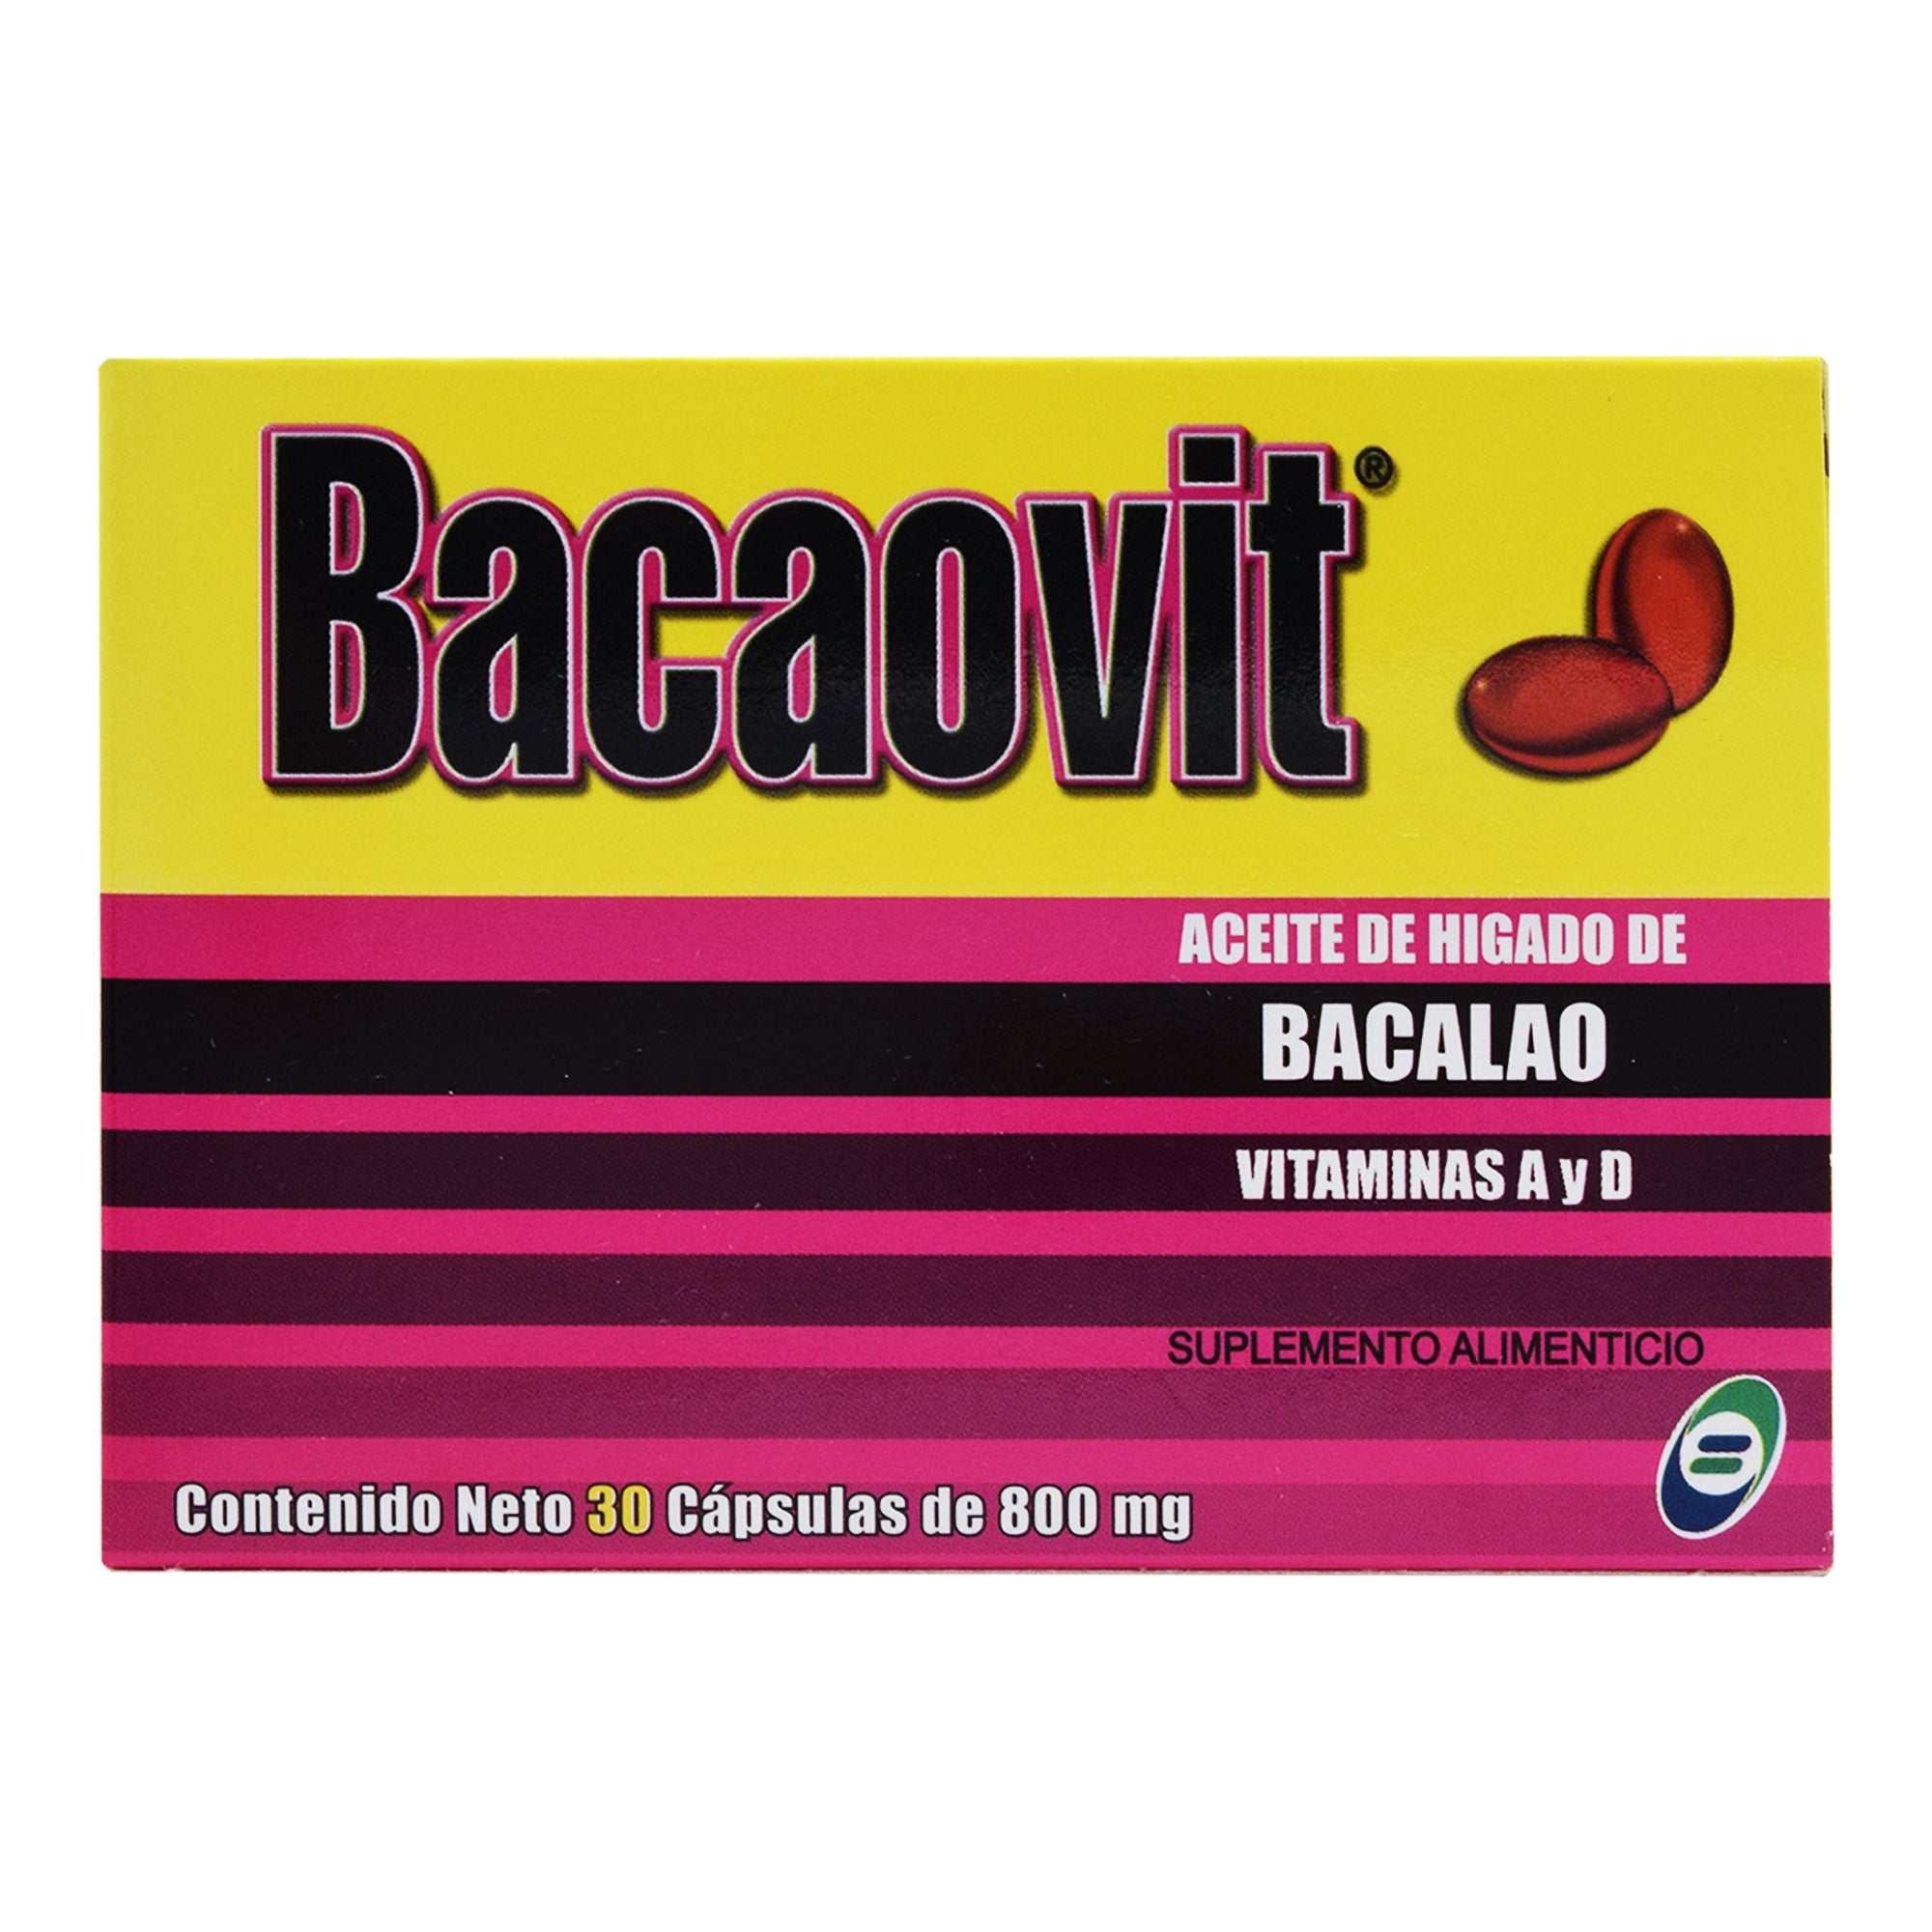 Bacaovit 30 Cap